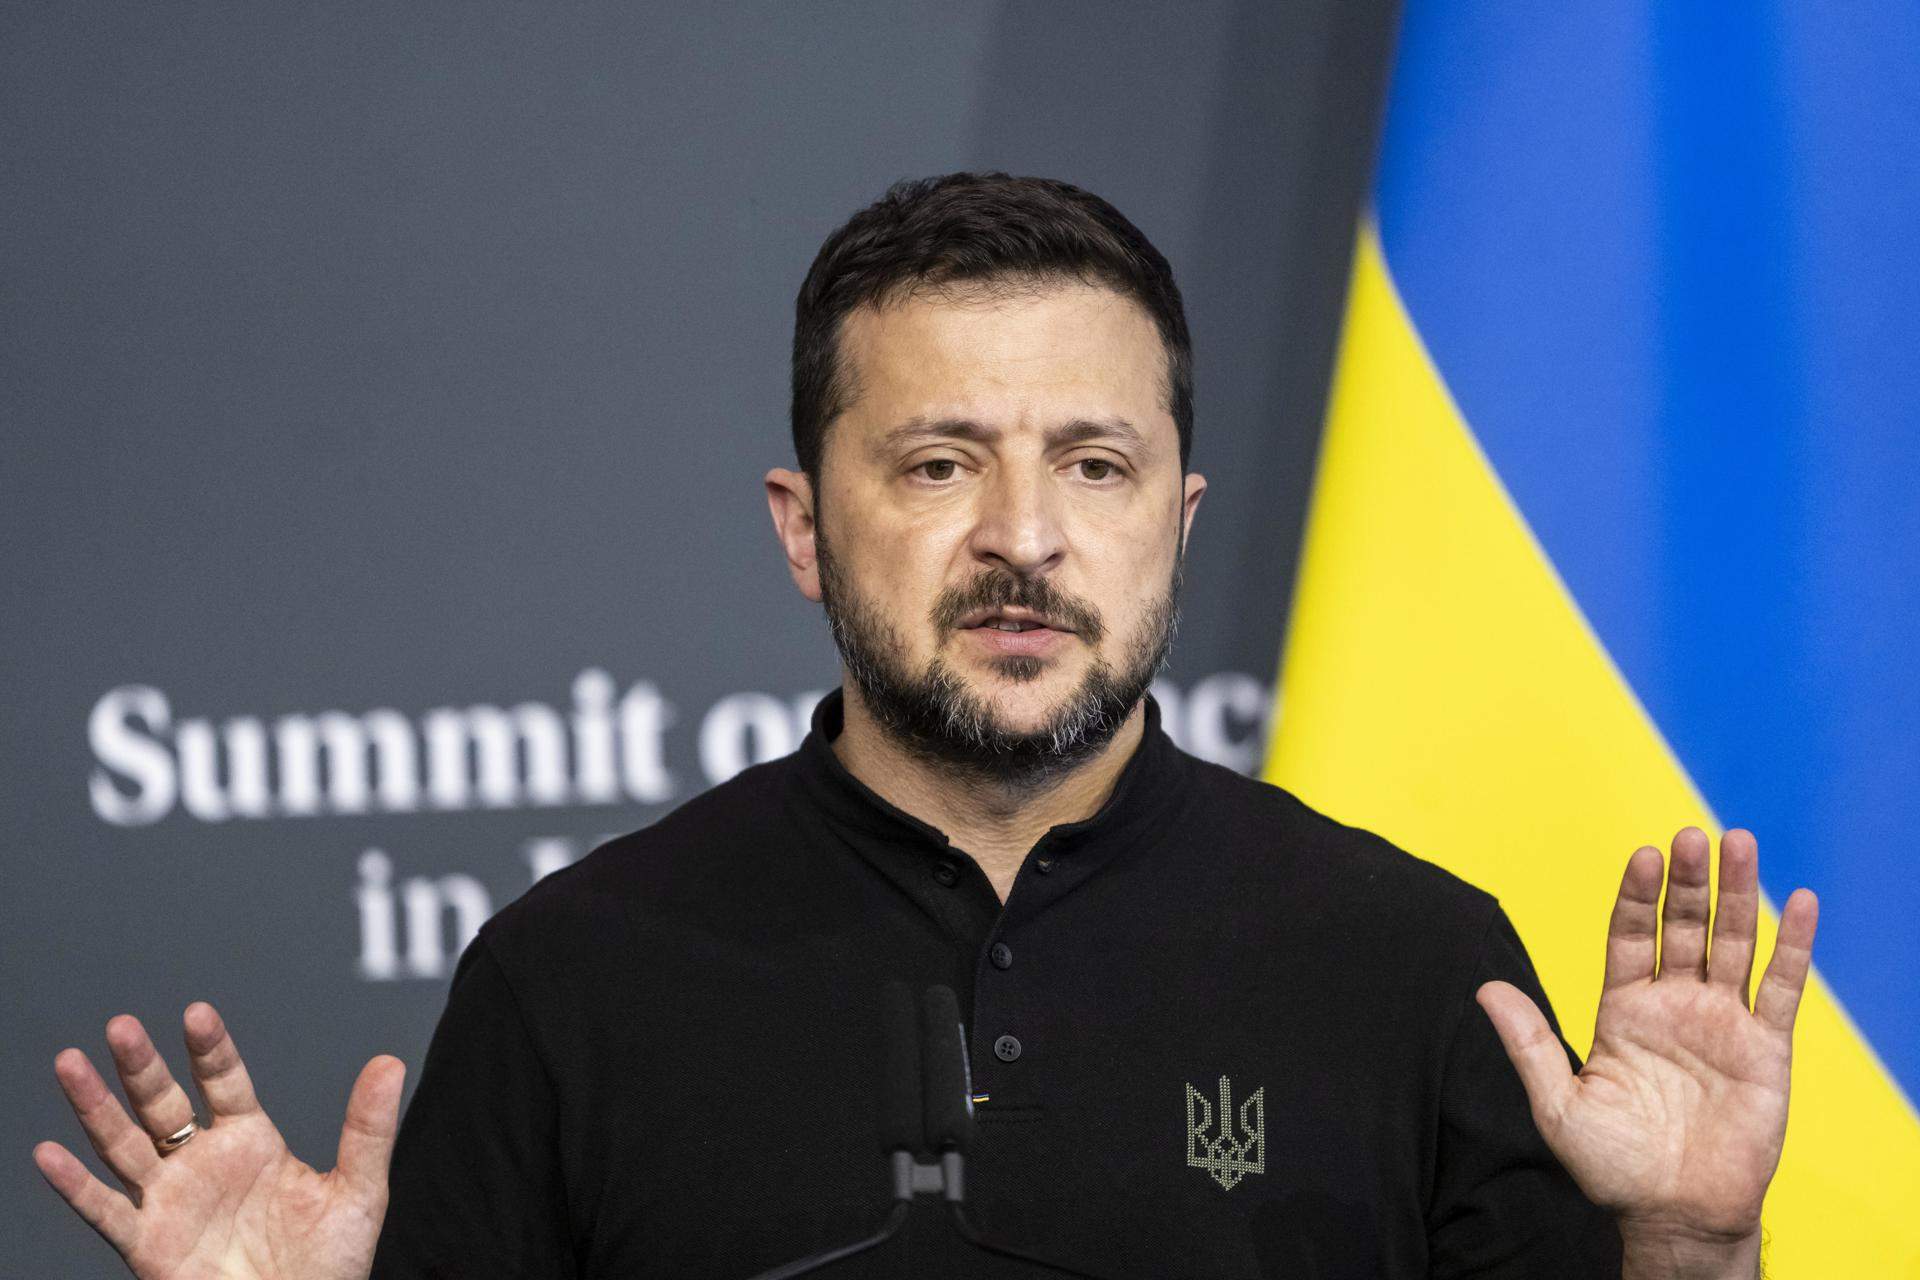 La UE enceta negociacions amb Ucraïna i Moldàvia: què suposa?